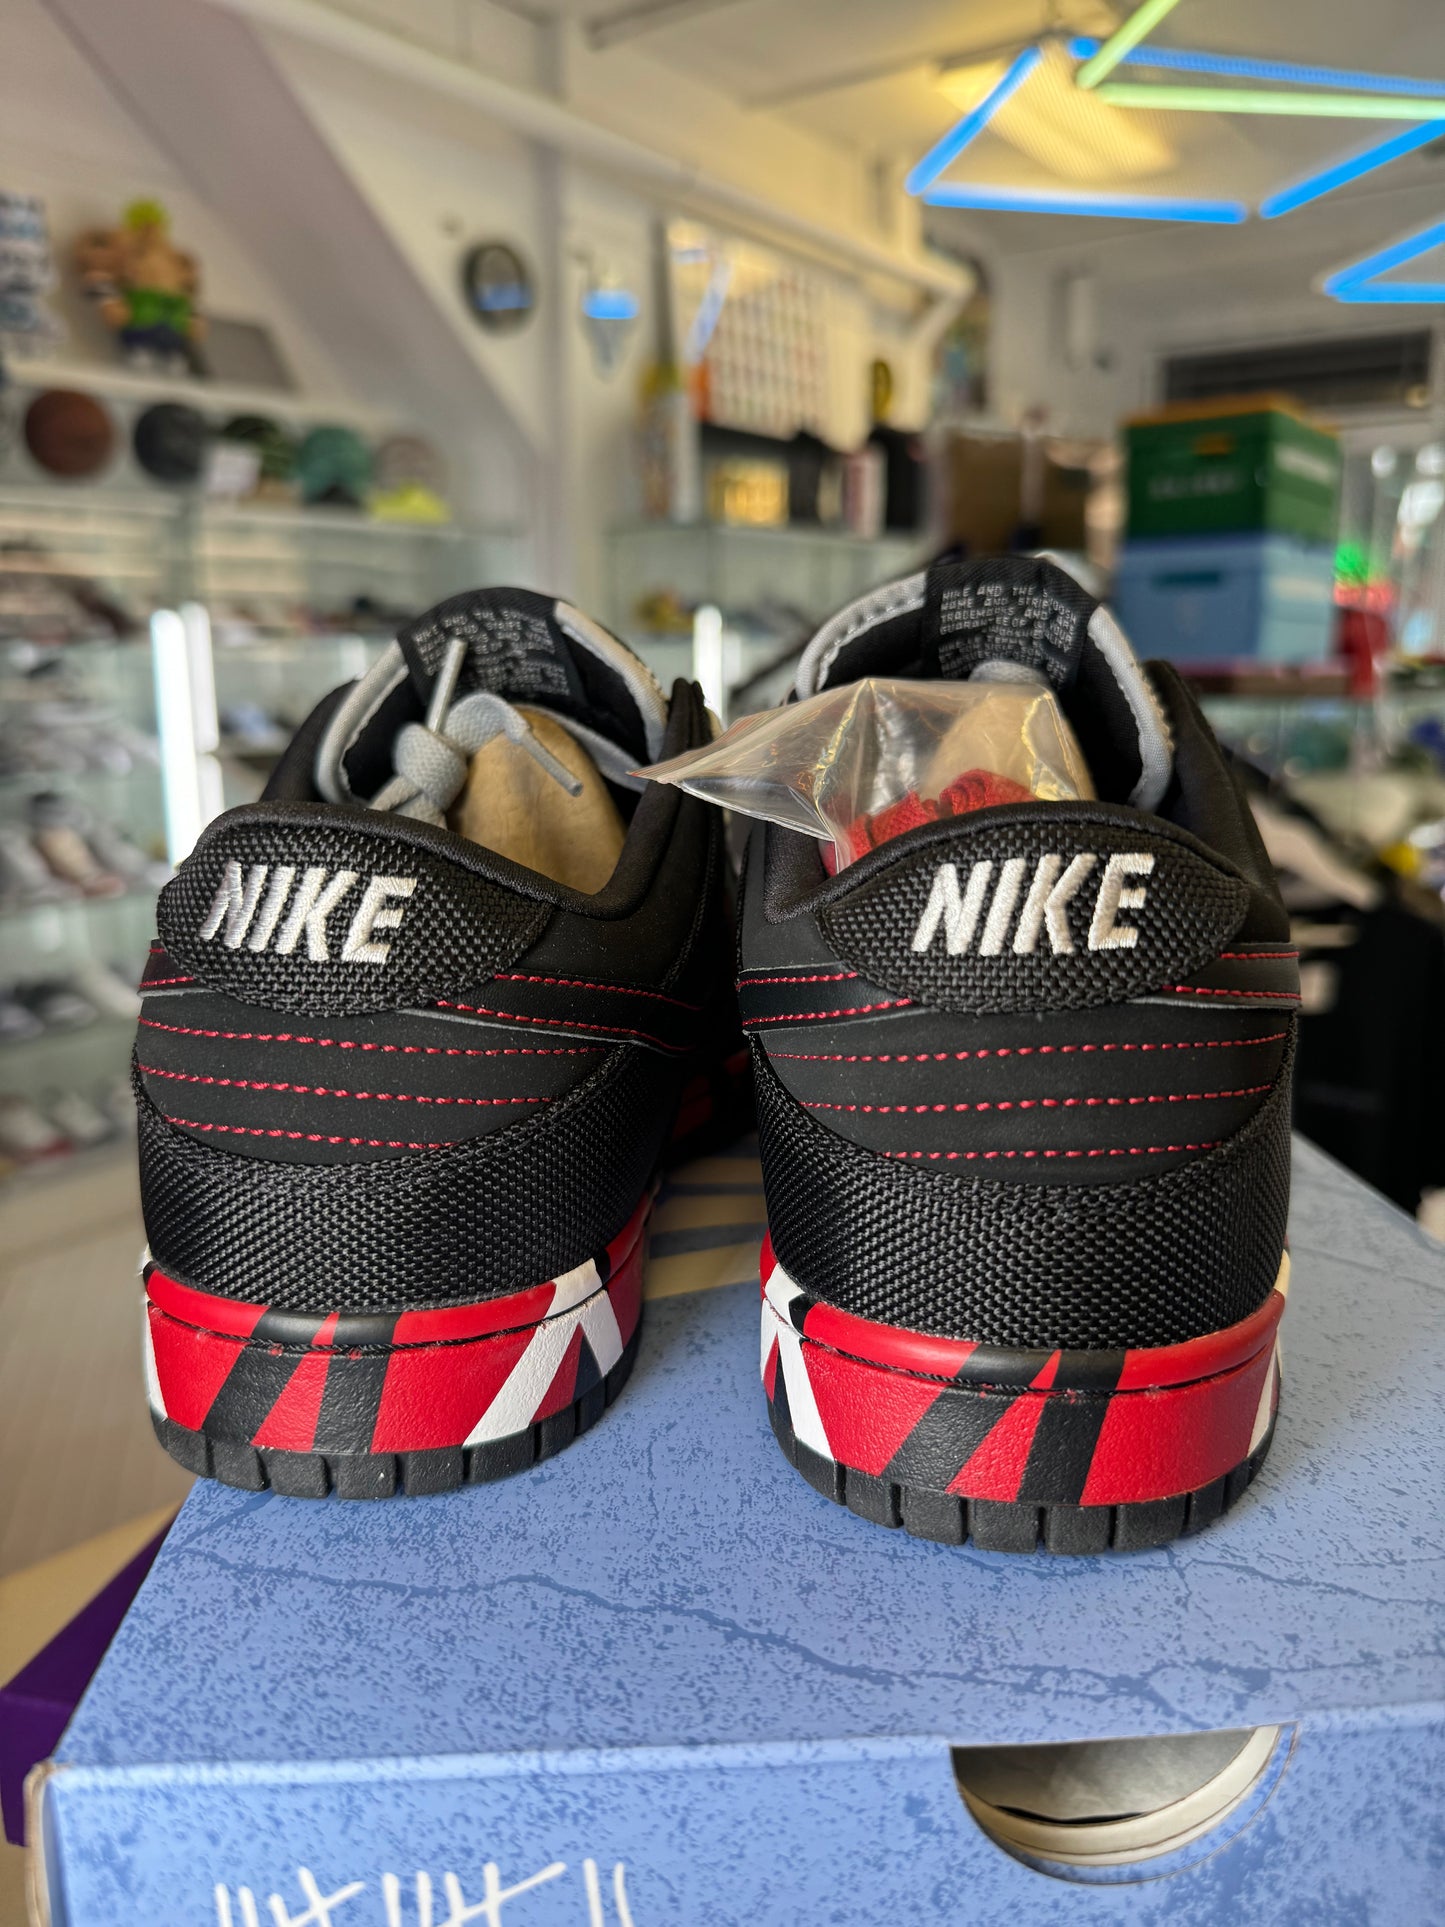 Nike Dunk “Van Halen